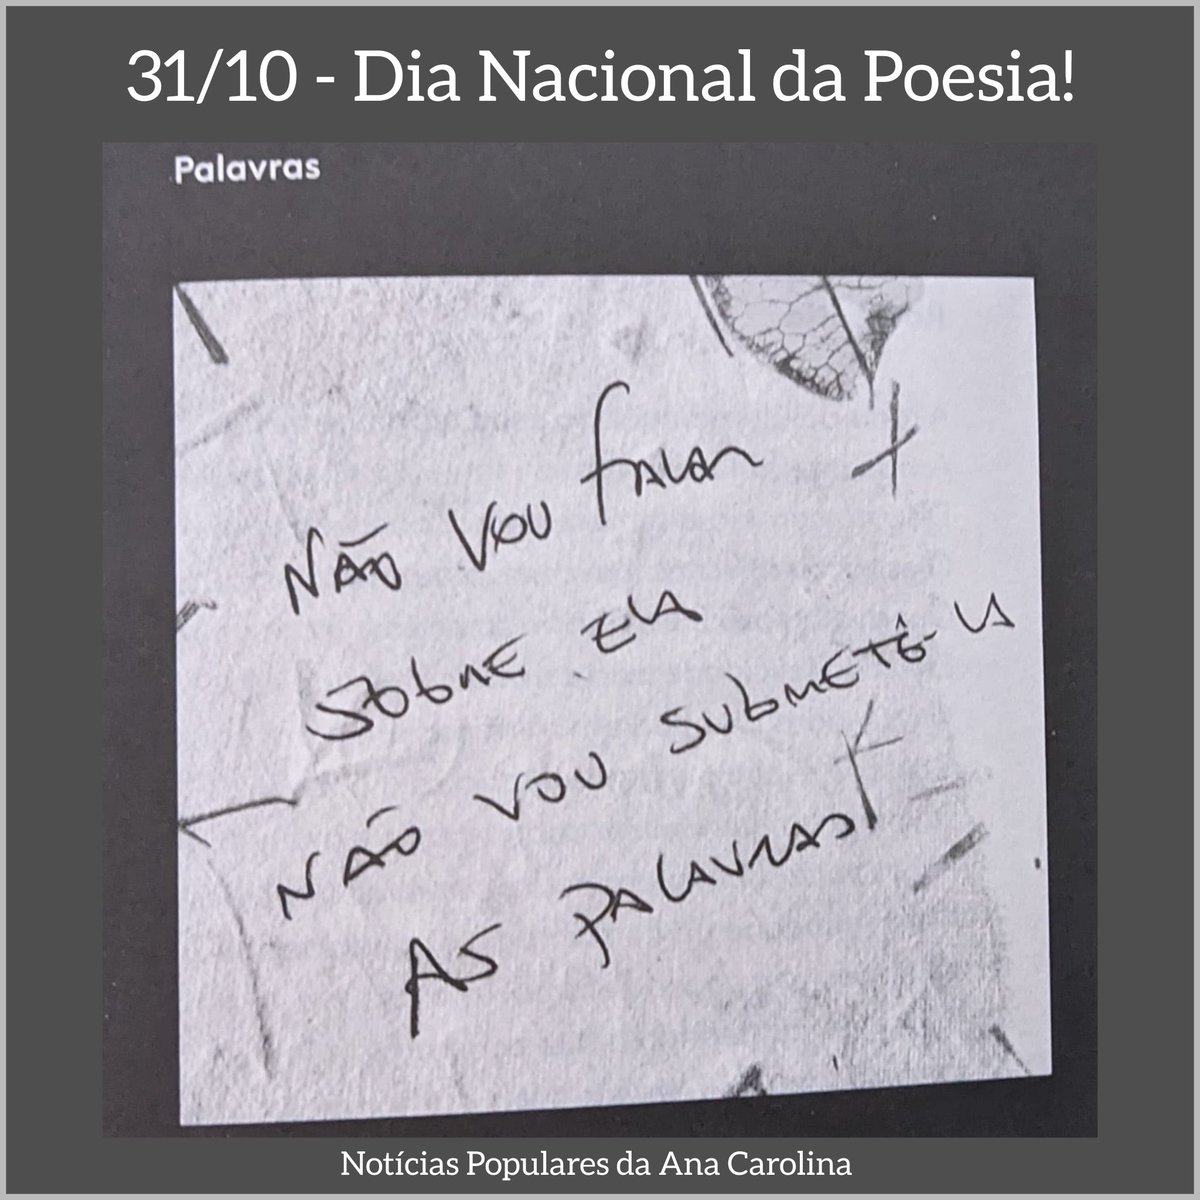 31 de Outubro – Dia Nacional da Poesia
══
'Não vou falar
Sobre ela
Não vou submetê-la
As palavras.'

- da Poesia 'Palavras' do livro 'Ruído Branco' da @sigaanacarolina ... 🌹 
══
Foto do #Livro #RuídoBranco
#Poesia #Palavras
#DiaNacionaldaPoesia #UmRuídoBrancoPraTodoMundo